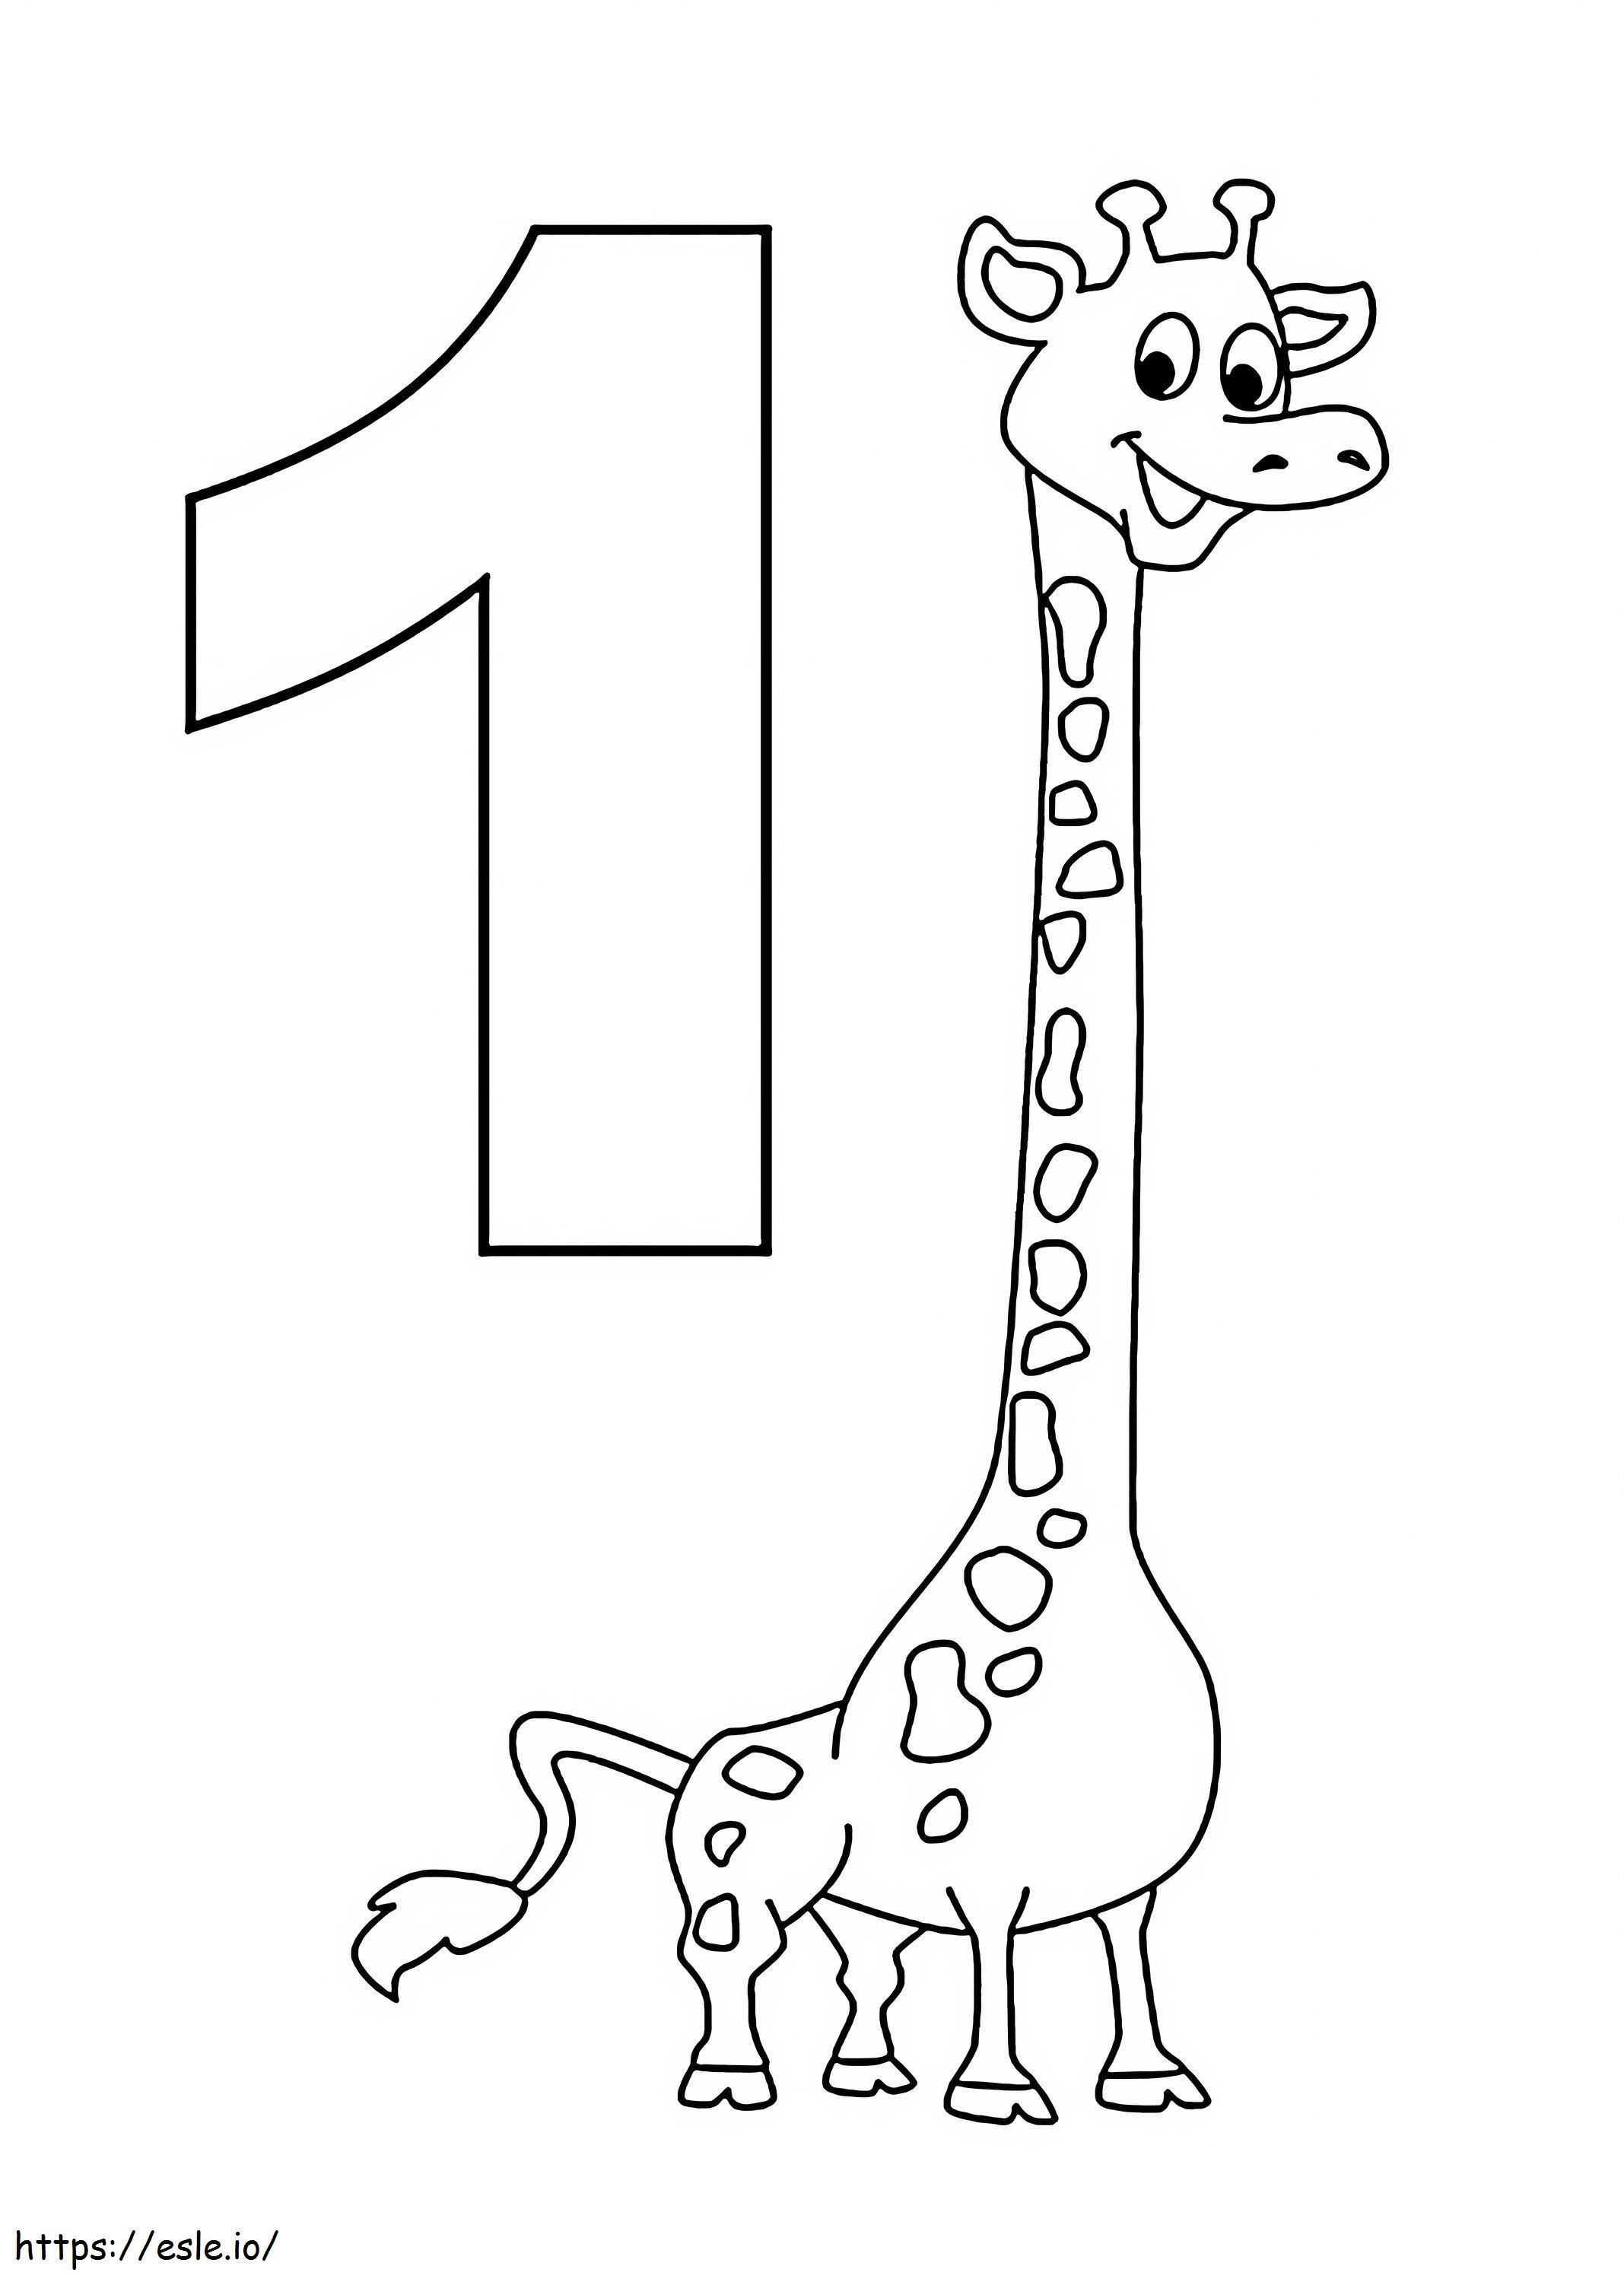 Número 1 y jirafa para colorear